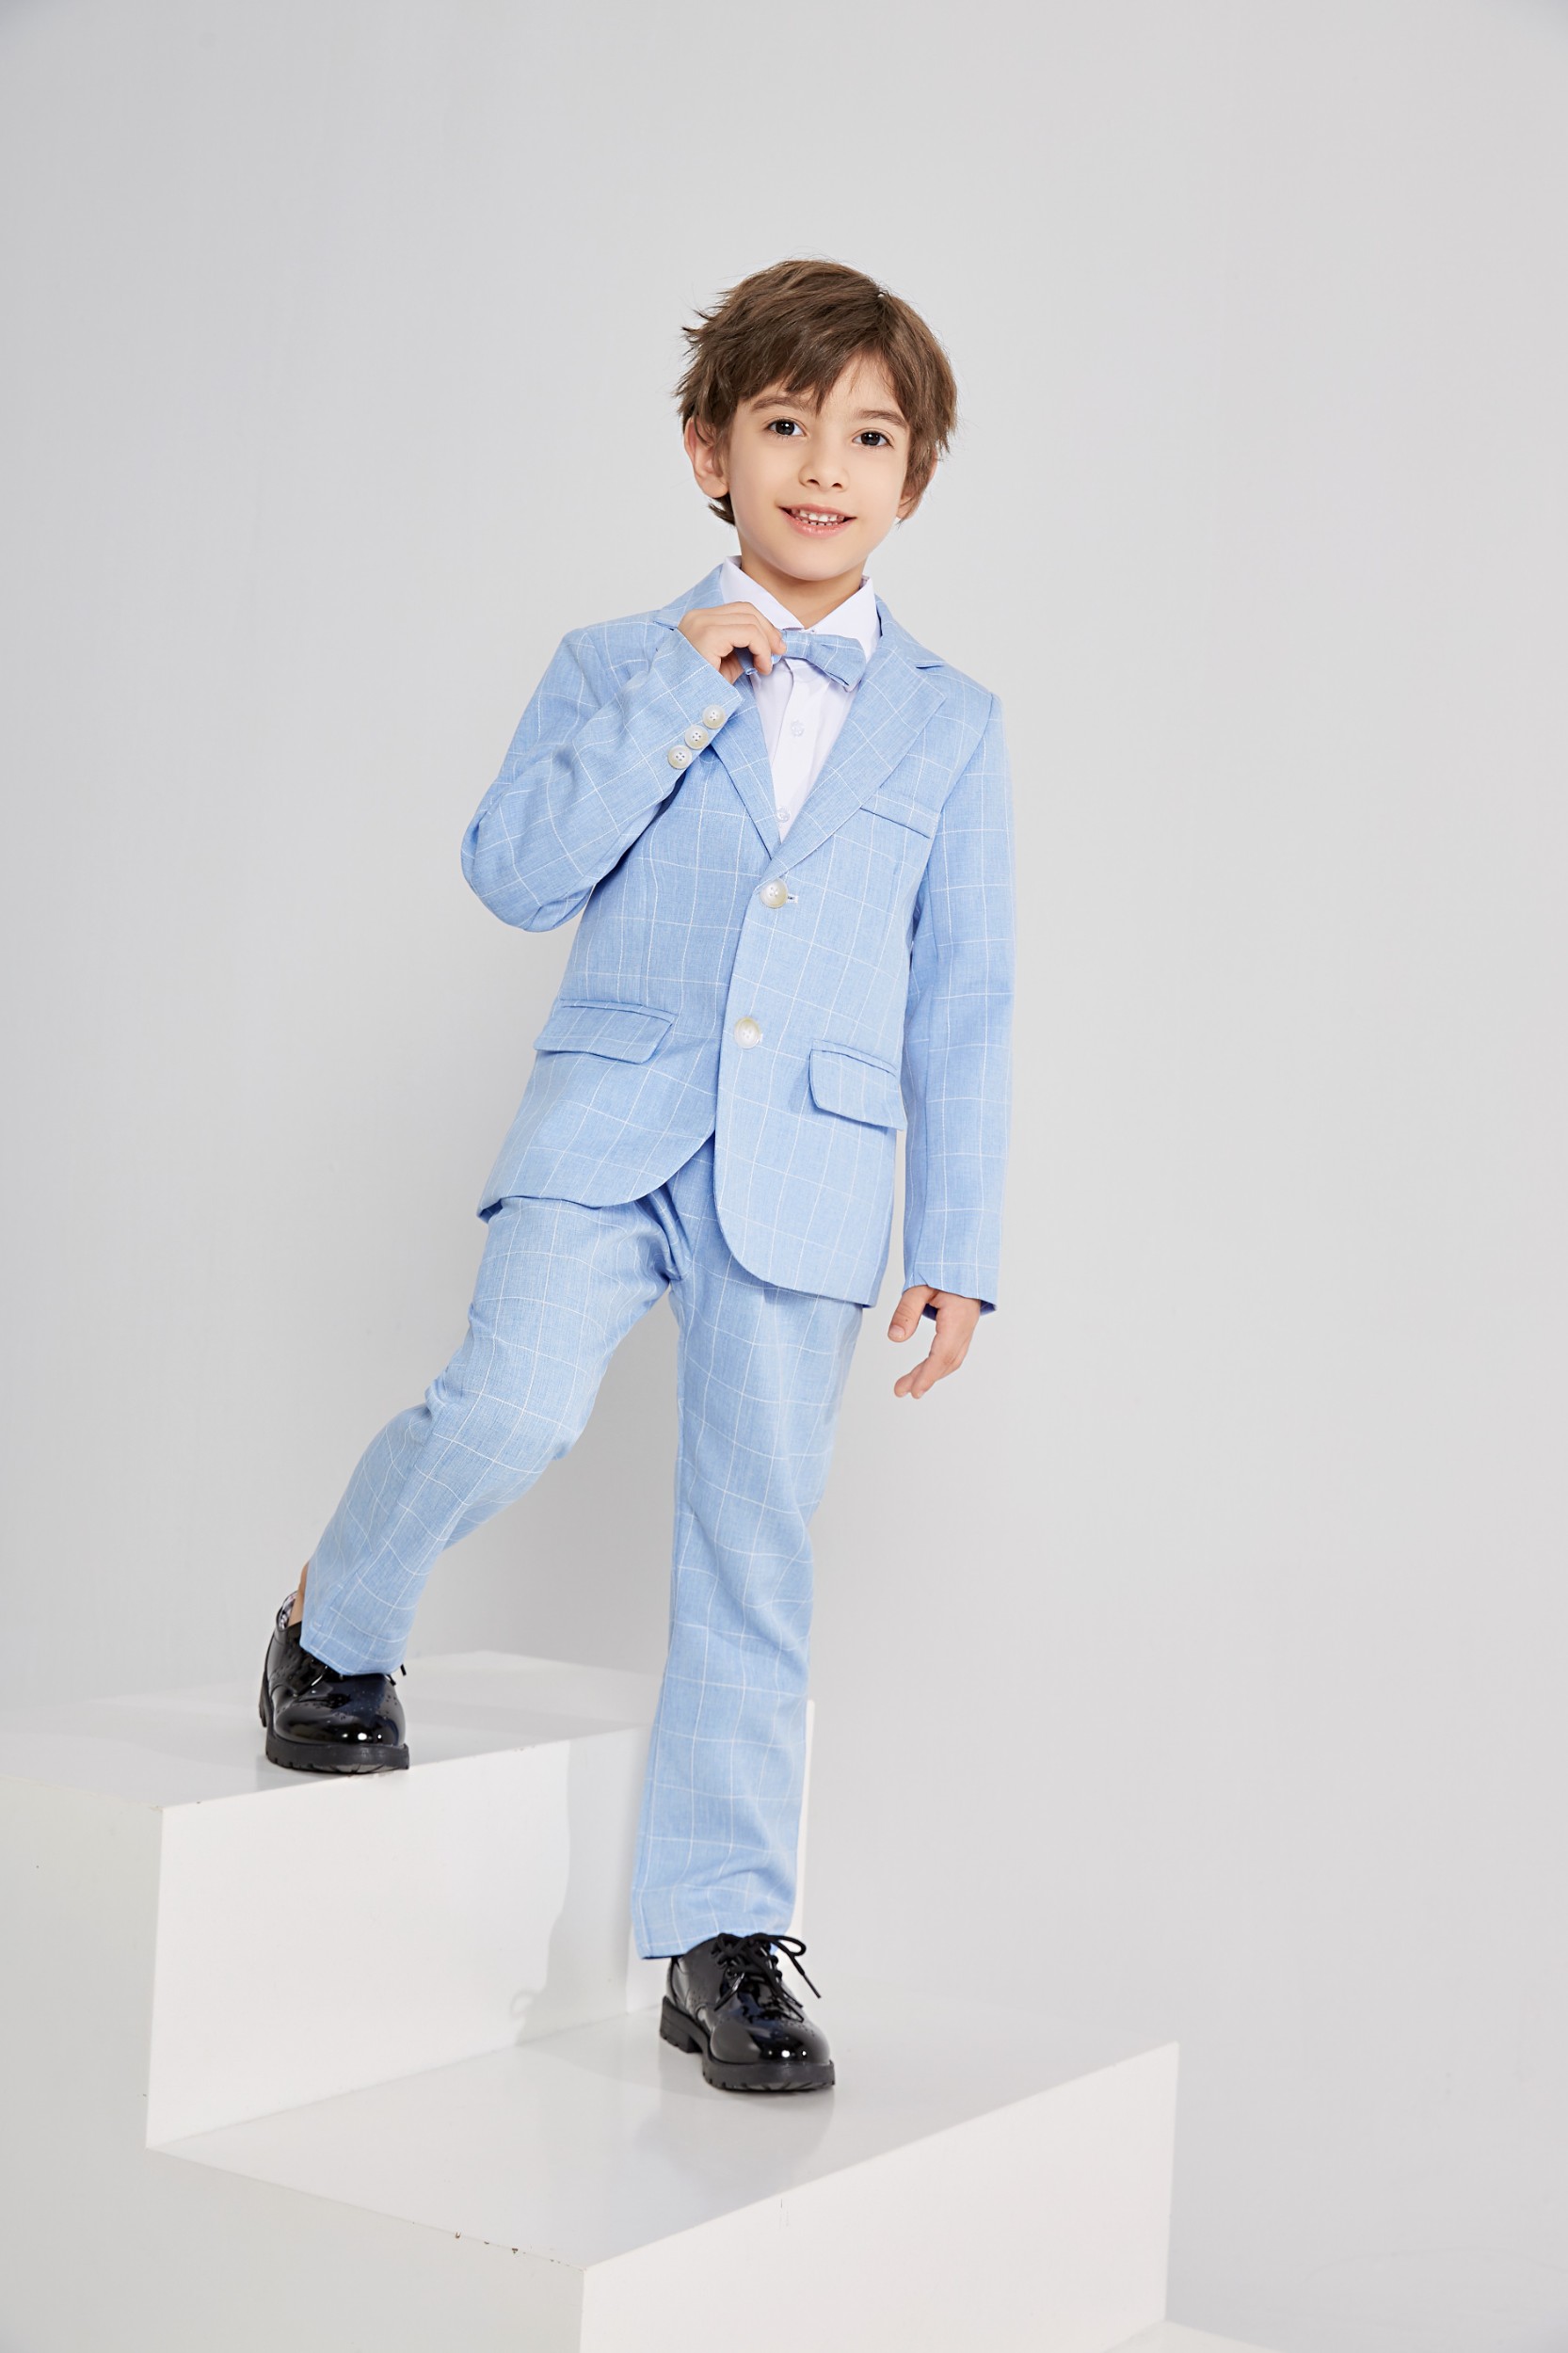 LOLANTA Boys Suit Wedding Ring Bearer Outfit Kids Suit Set, Plaid ...